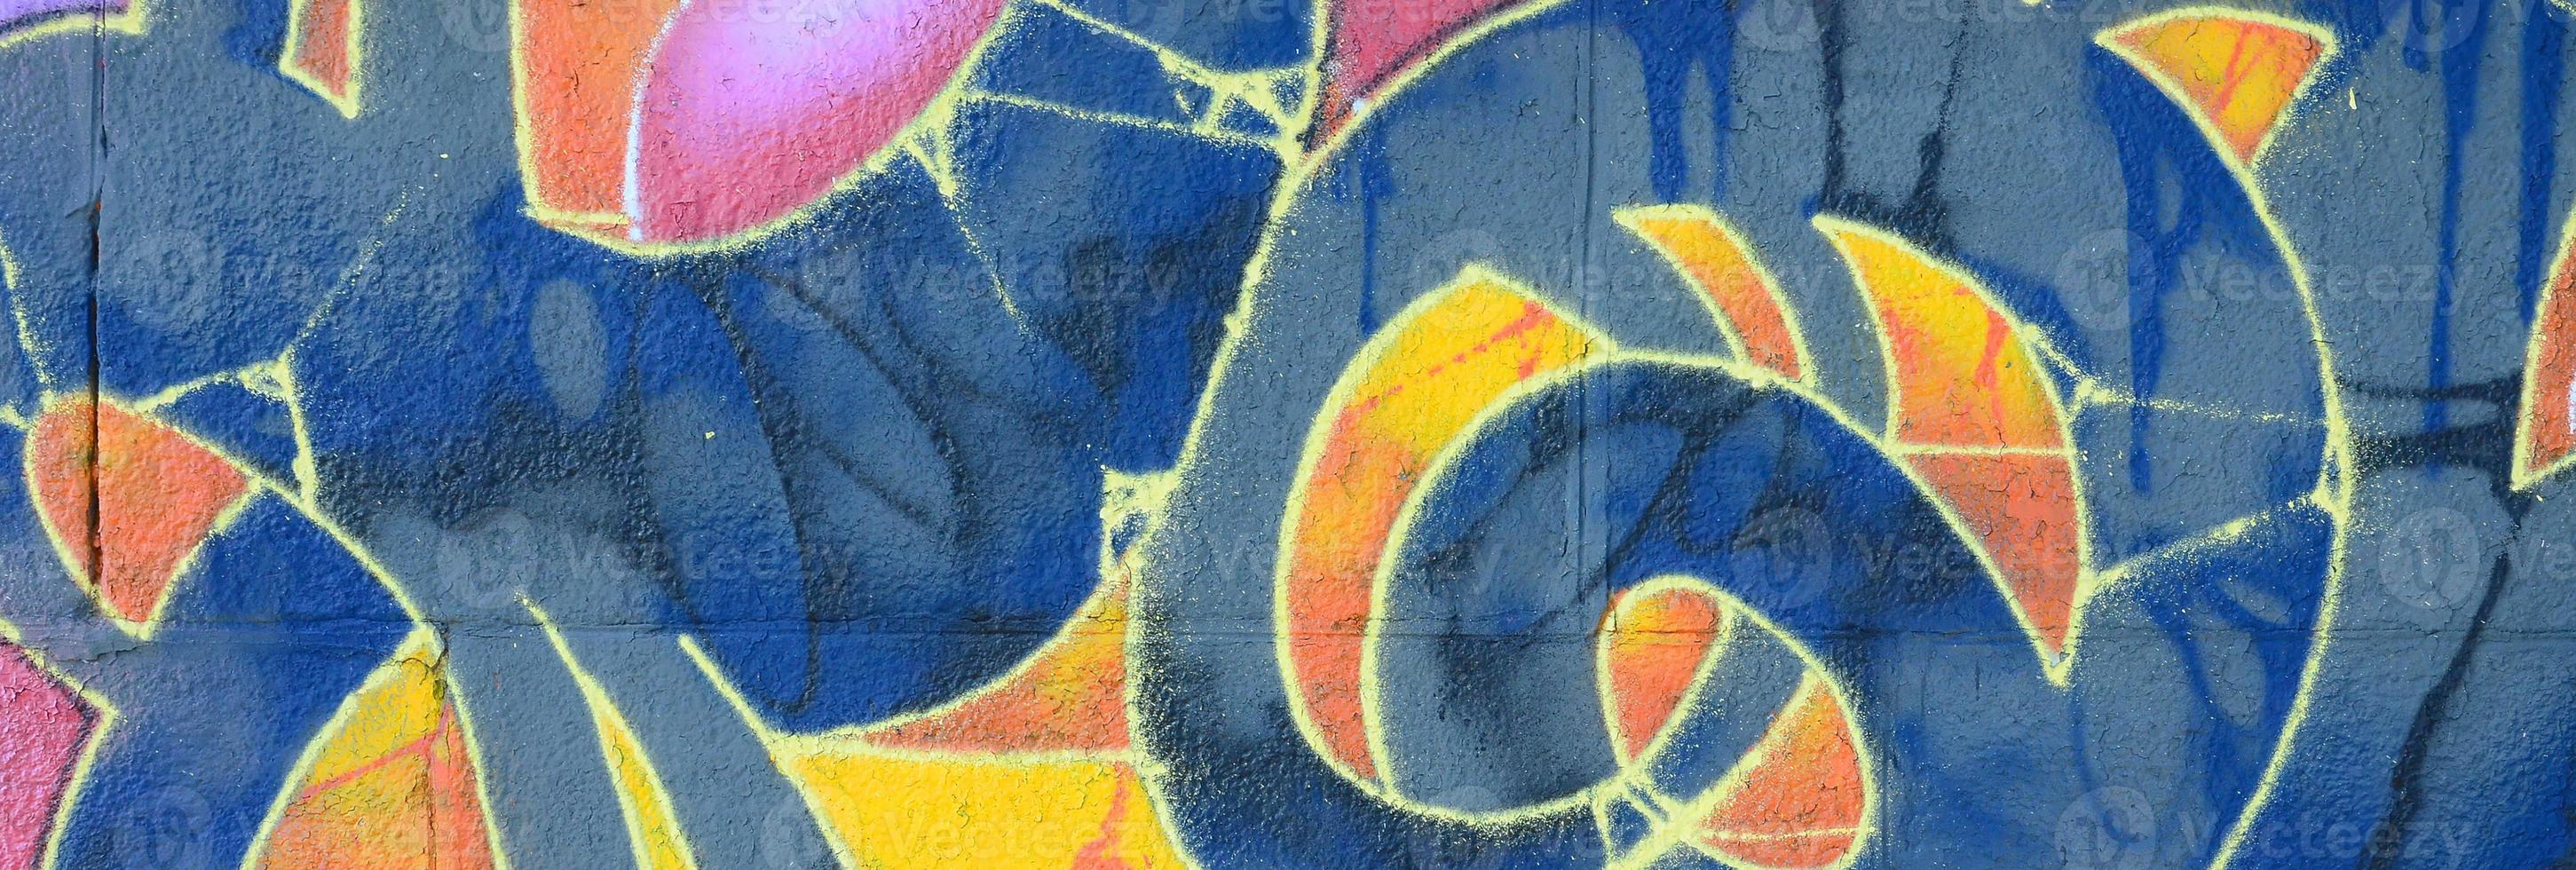 frammento di graffiti disegni. il vecchio parete decorato con dipingere macchie nel il stile di strada arte cultura. multicolore sfondo struttura foto